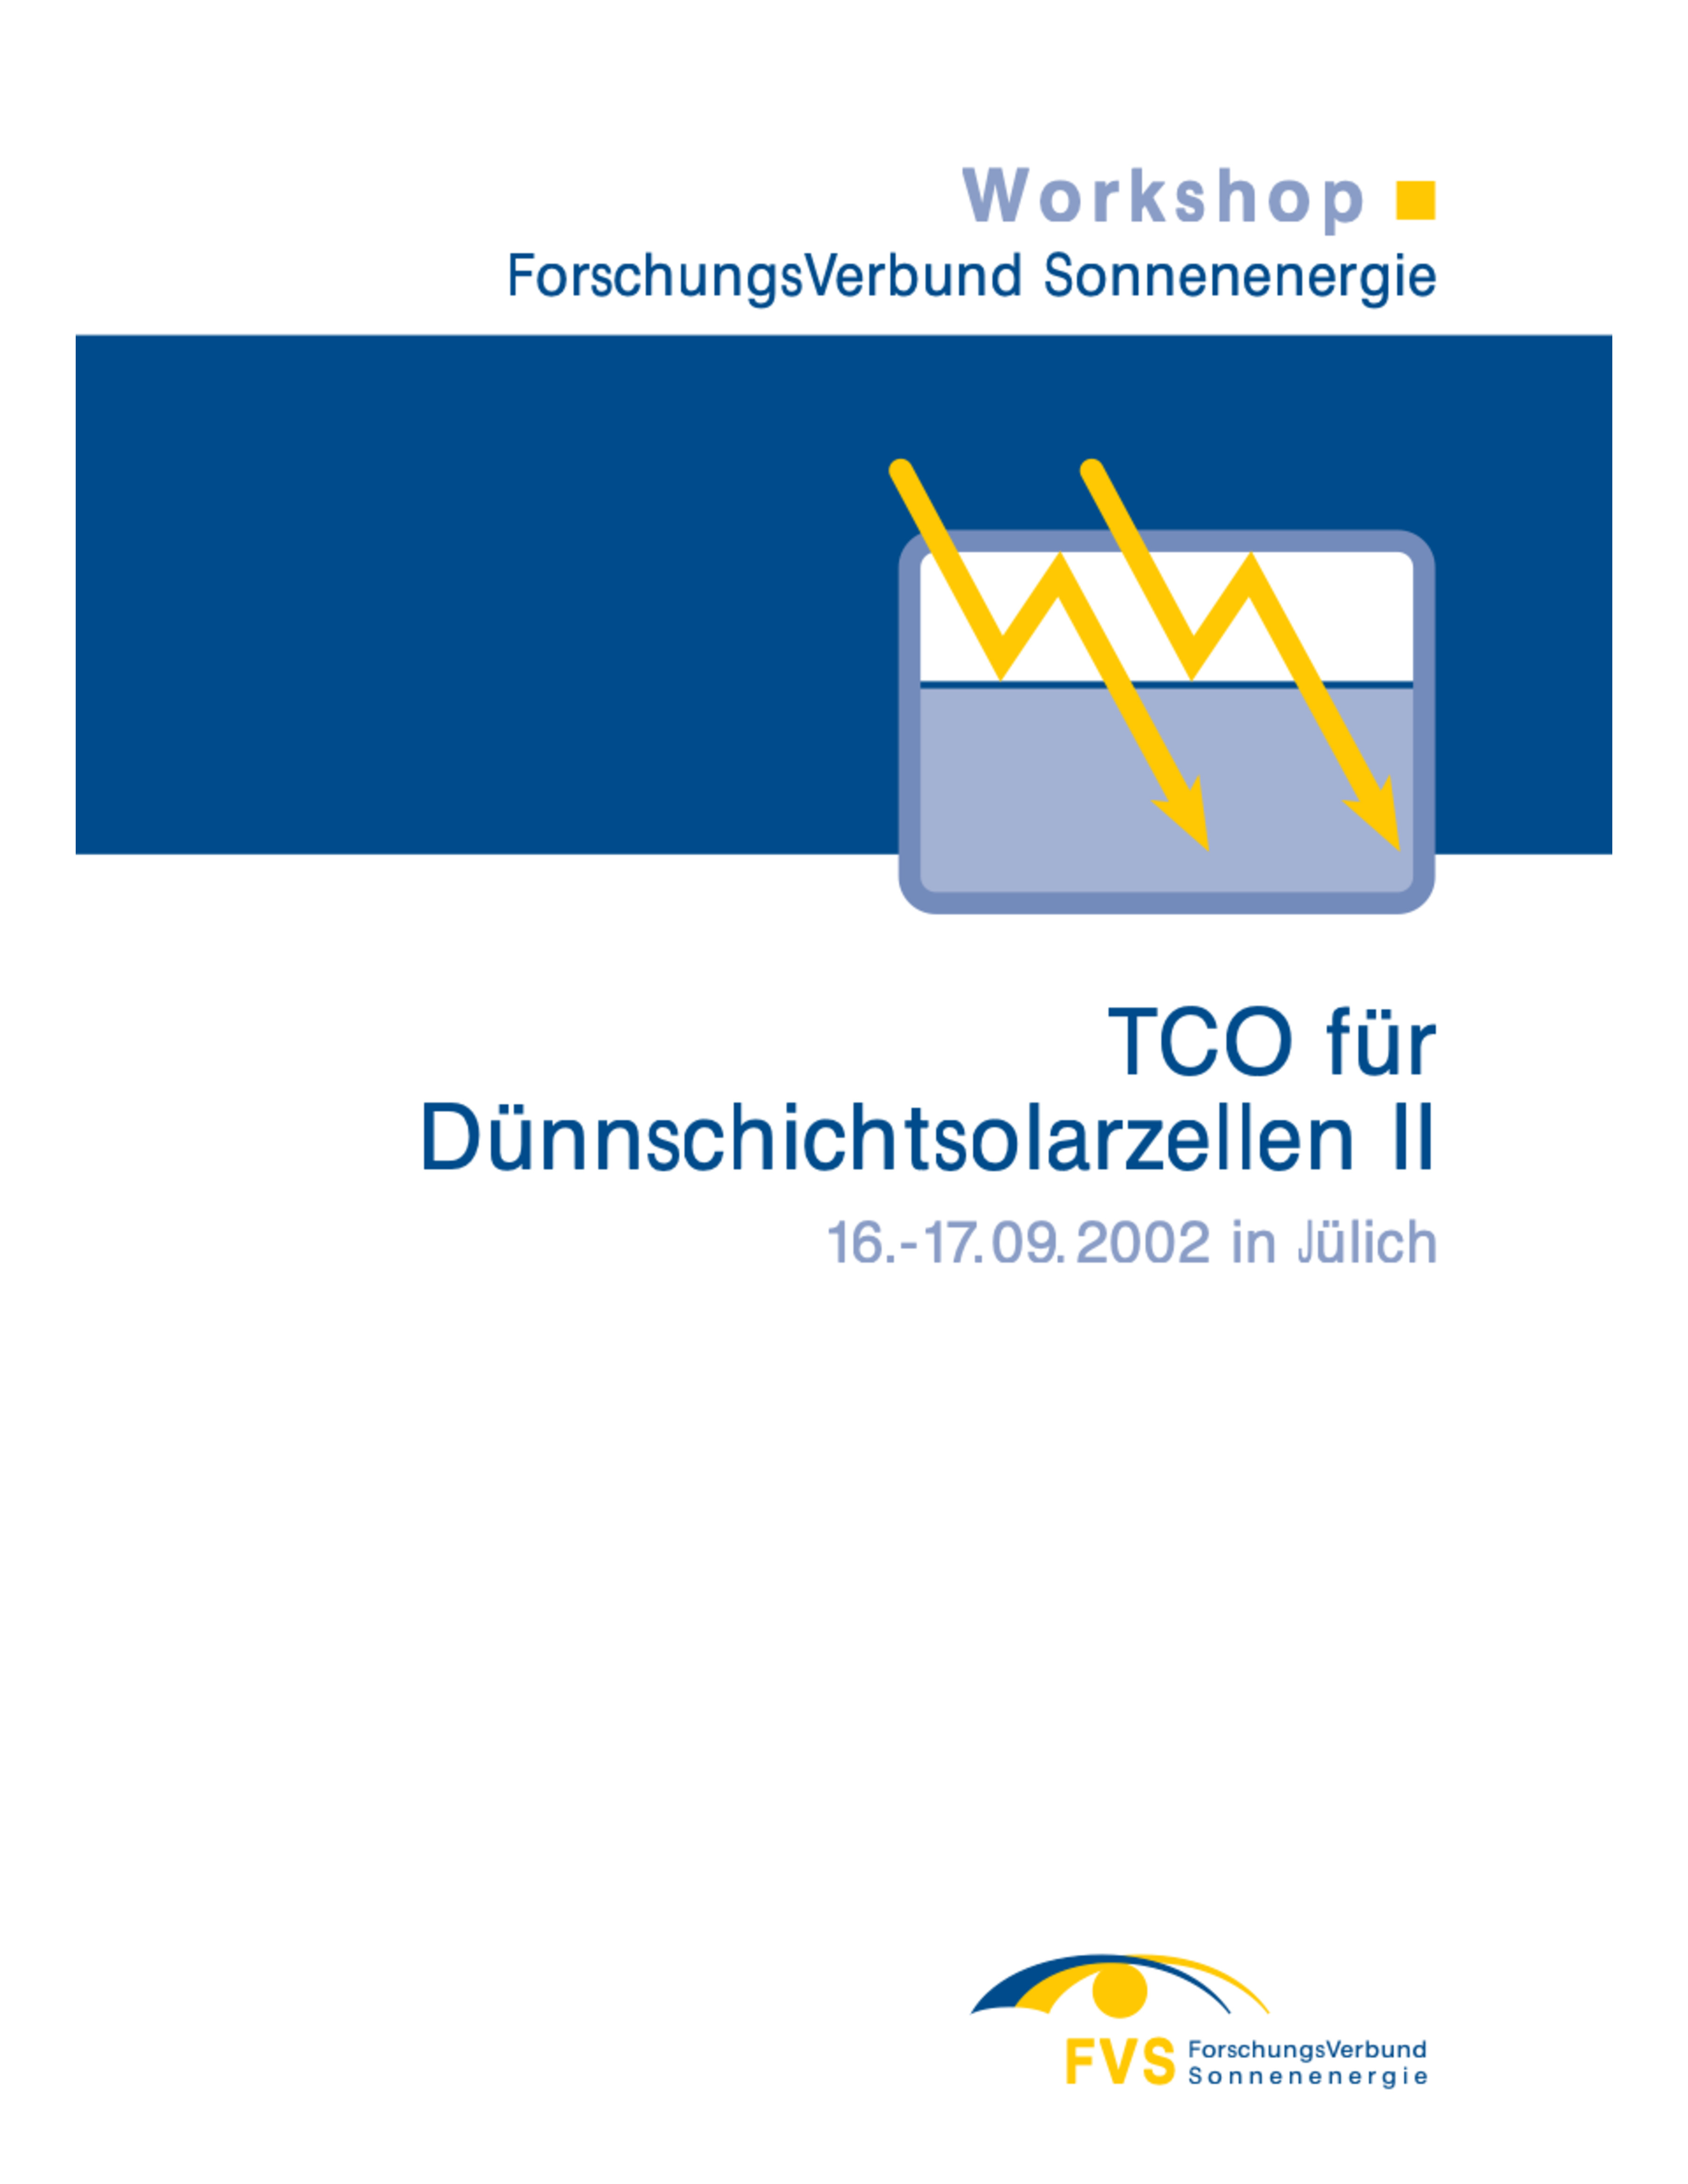 Workshop 2002: TCO für Dünnschichtsolarzellen /Teil 2